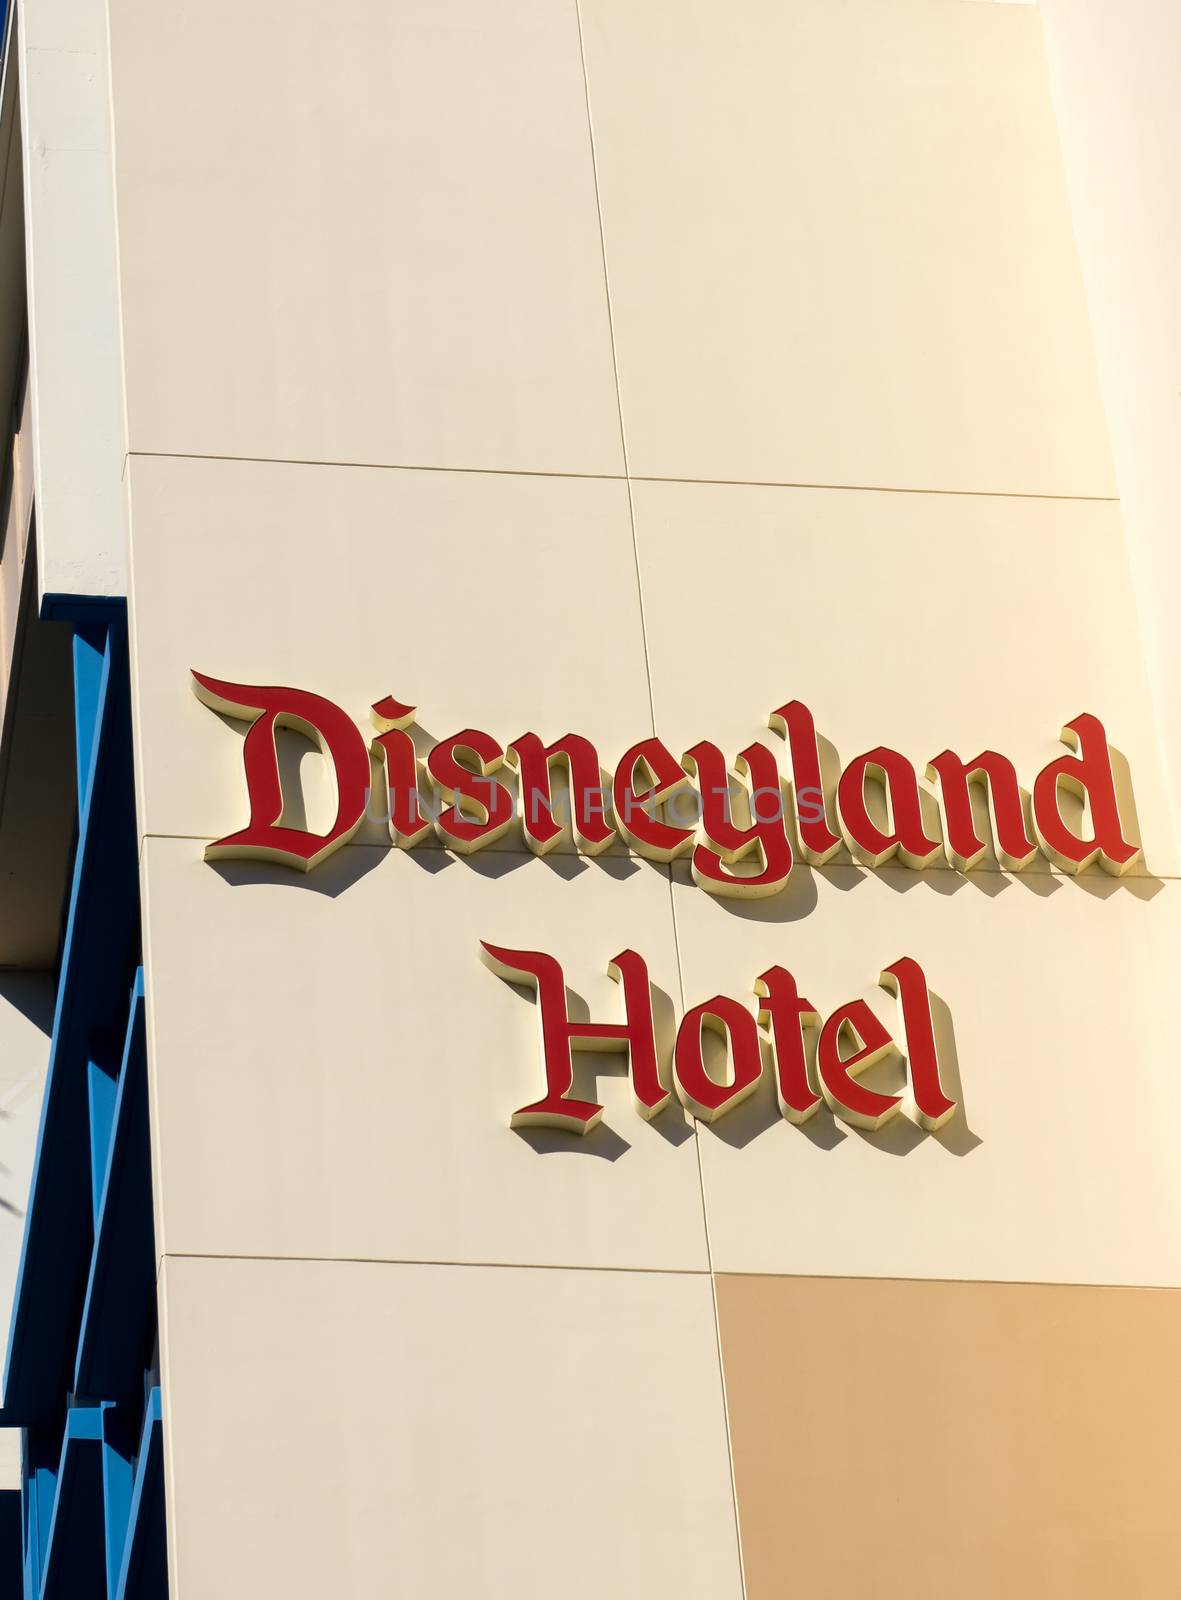 Disneyland Hotel Exterior by wolterk